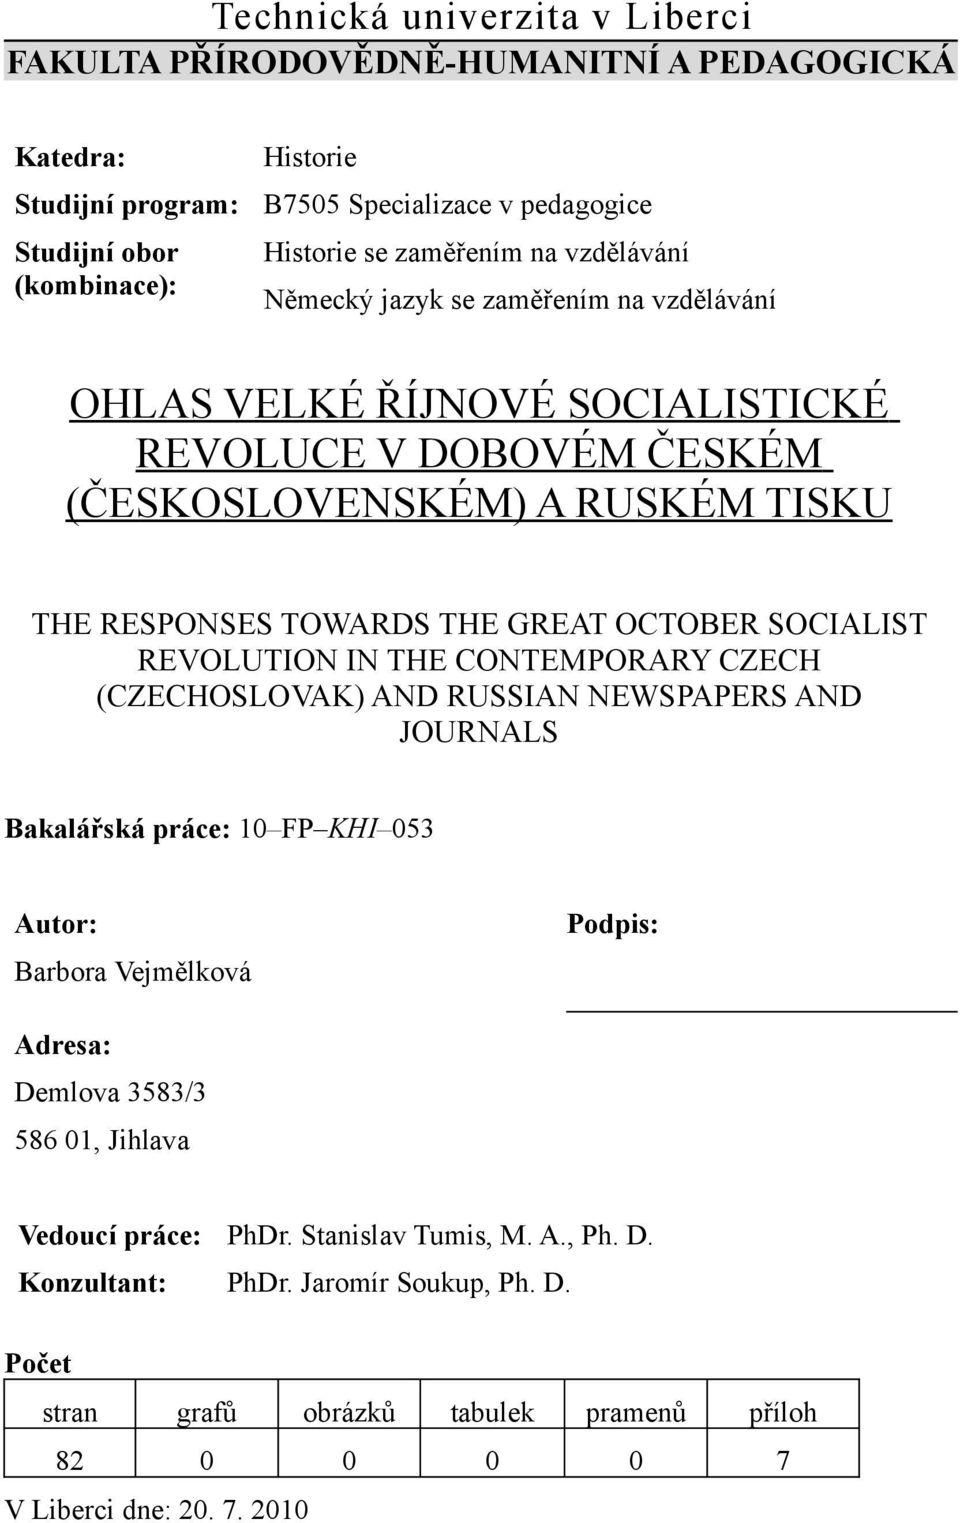 OCTOBER SOCIALIST REVOLUTION IN THE CONTEMPORARY CZECH (CZECHOSLOVAK) AND RUSSIAN NEWSPAPERS AND JOURNALS Bakalářská práce: 10 FP KHI 053 Autor: Podpis: Barbora Vejmělková Adresa: Demlova